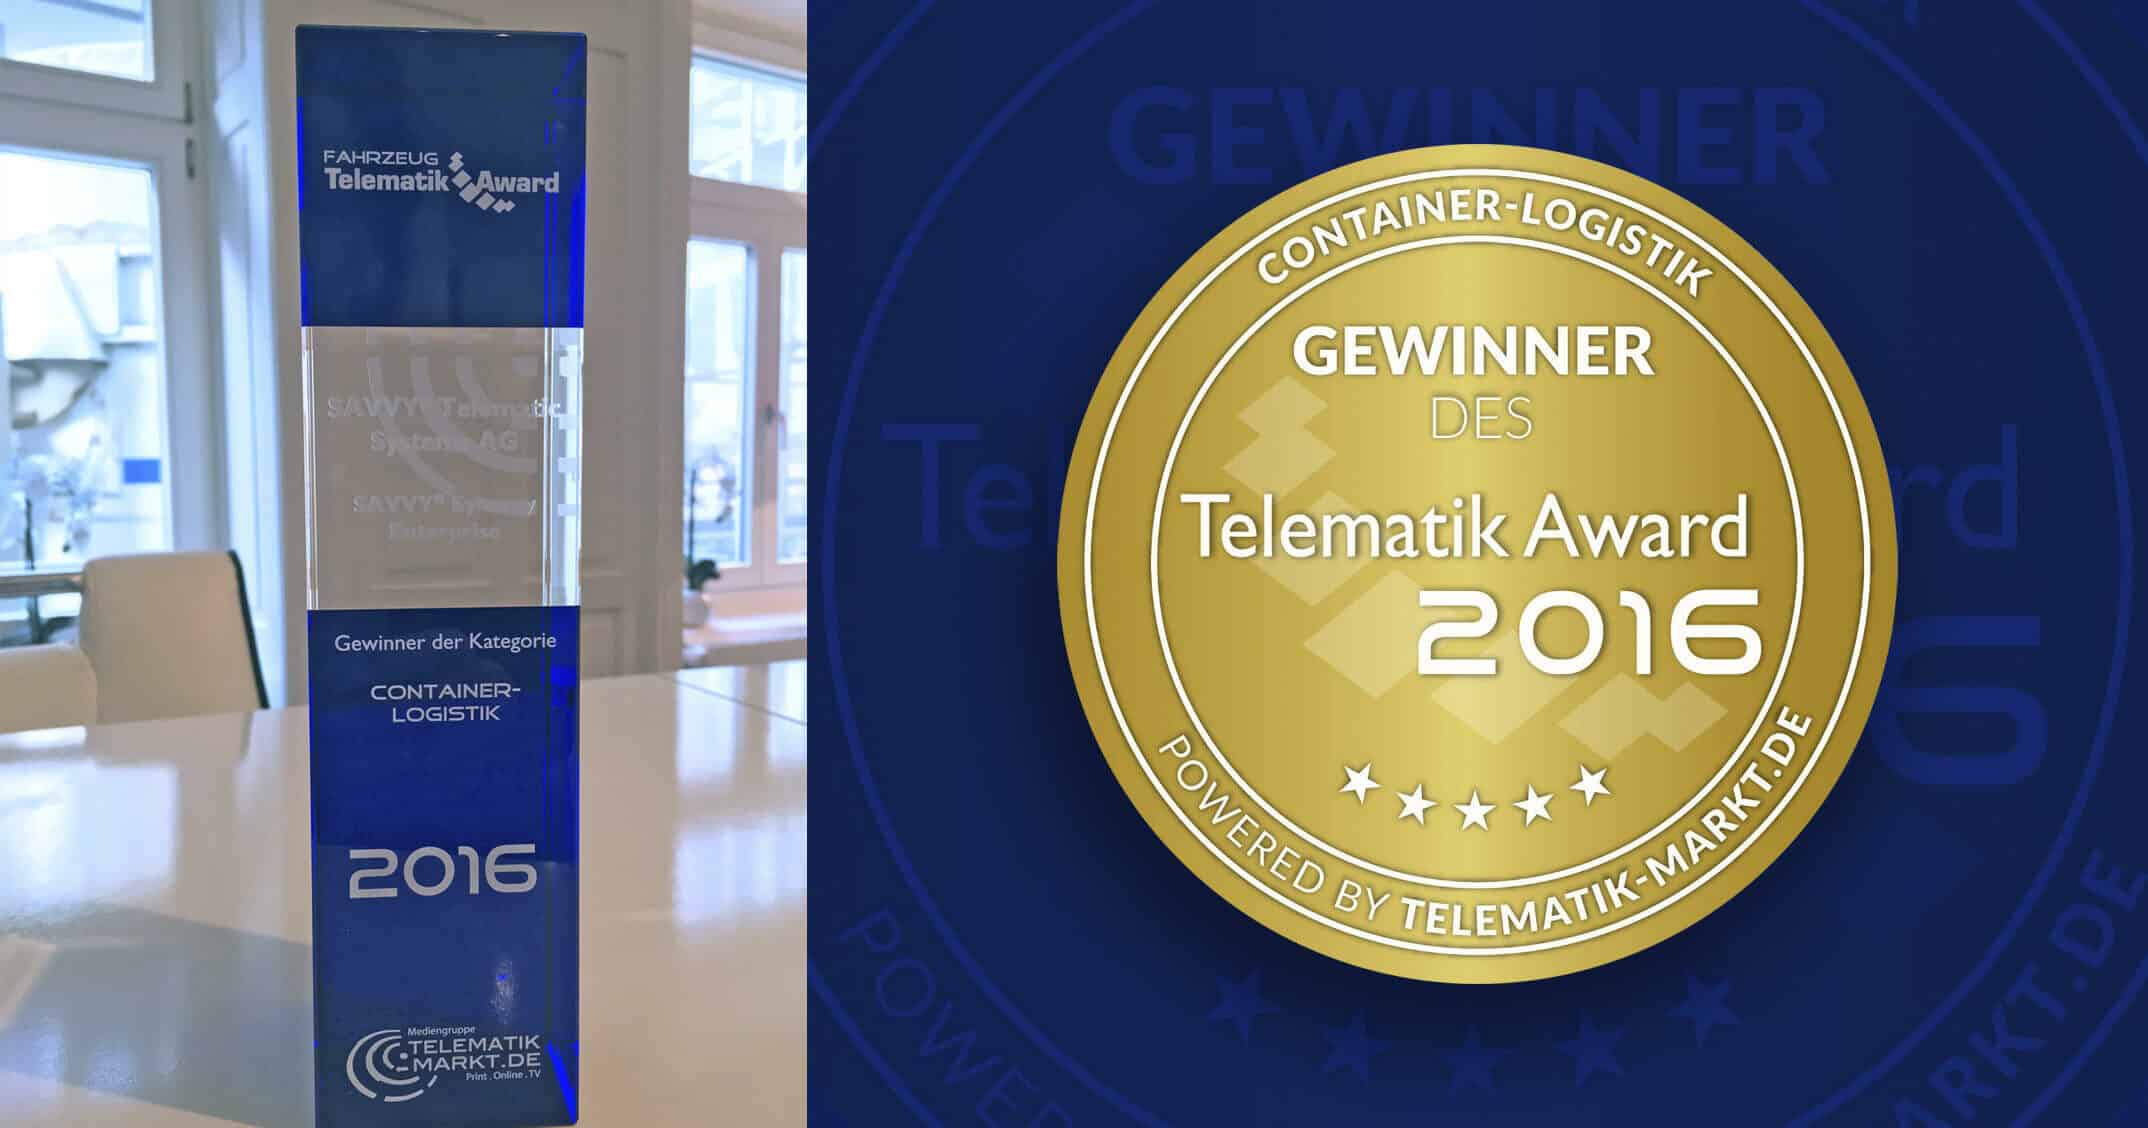 SAVVY® Telematic gewinnt Telematik Award 2016 in der Container Logistik